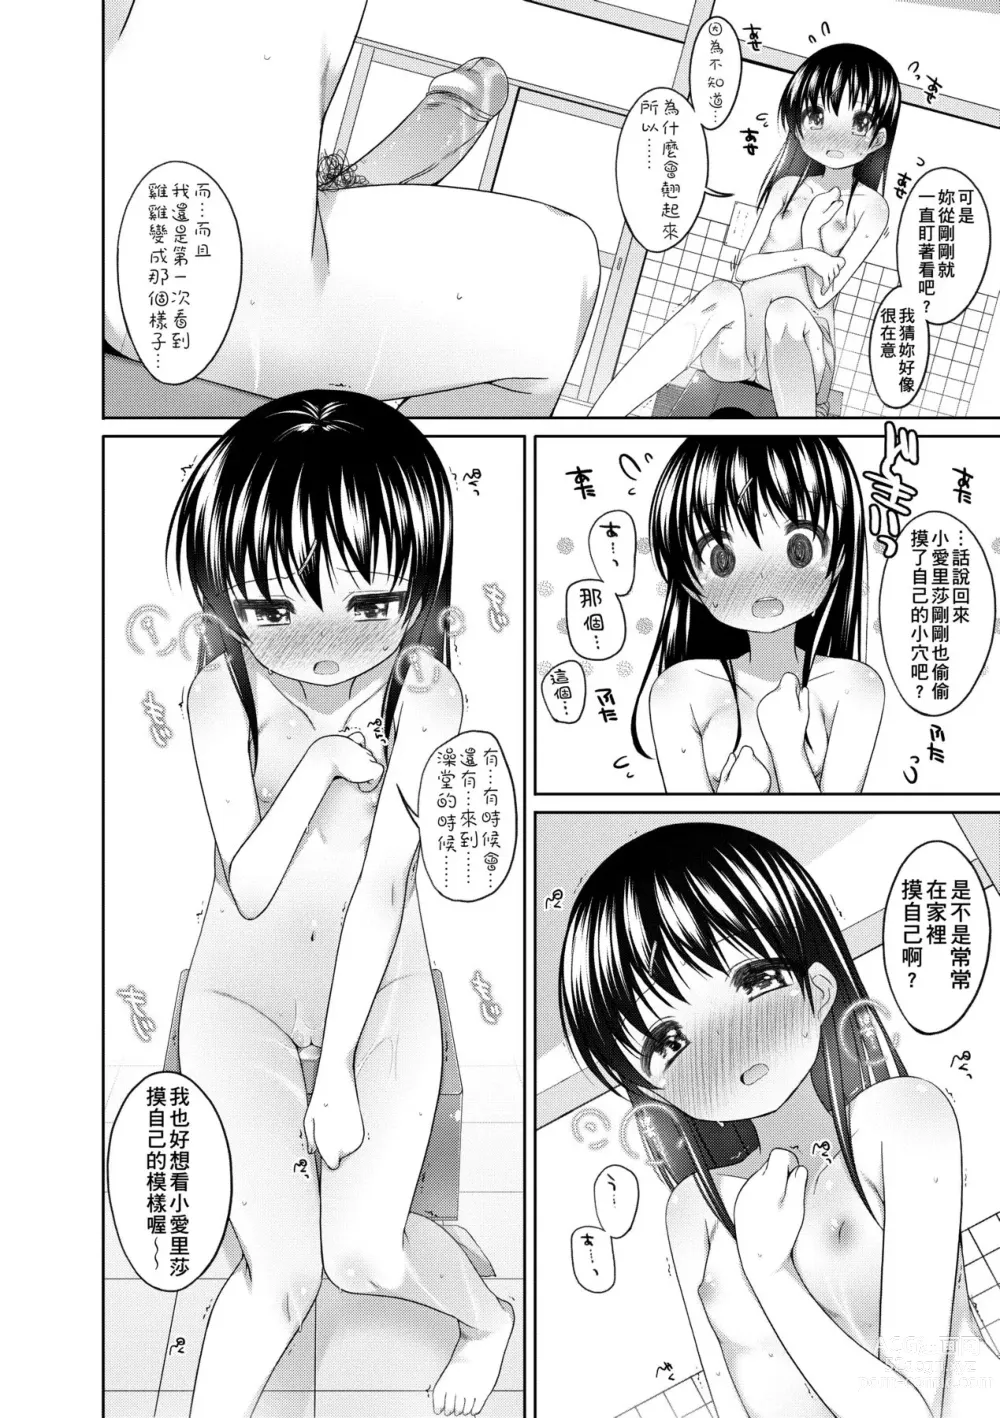 Page 19 of manga Chiisaiko Iiyone... (decensored)